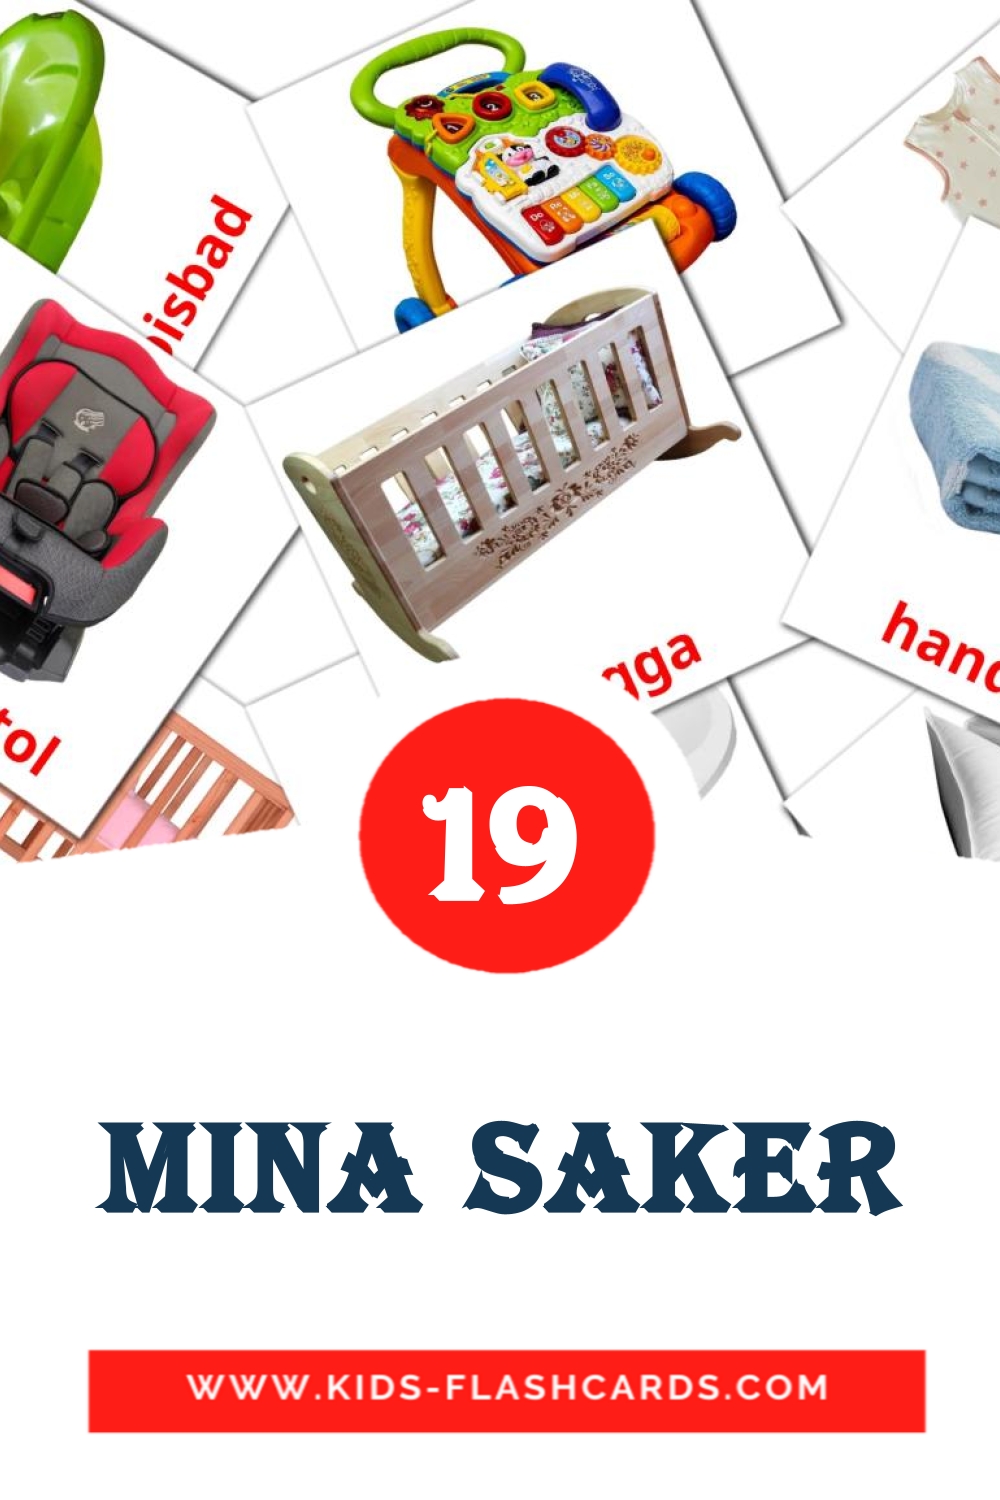 Mina saker на шведском для Детского Сада (19 карточек)